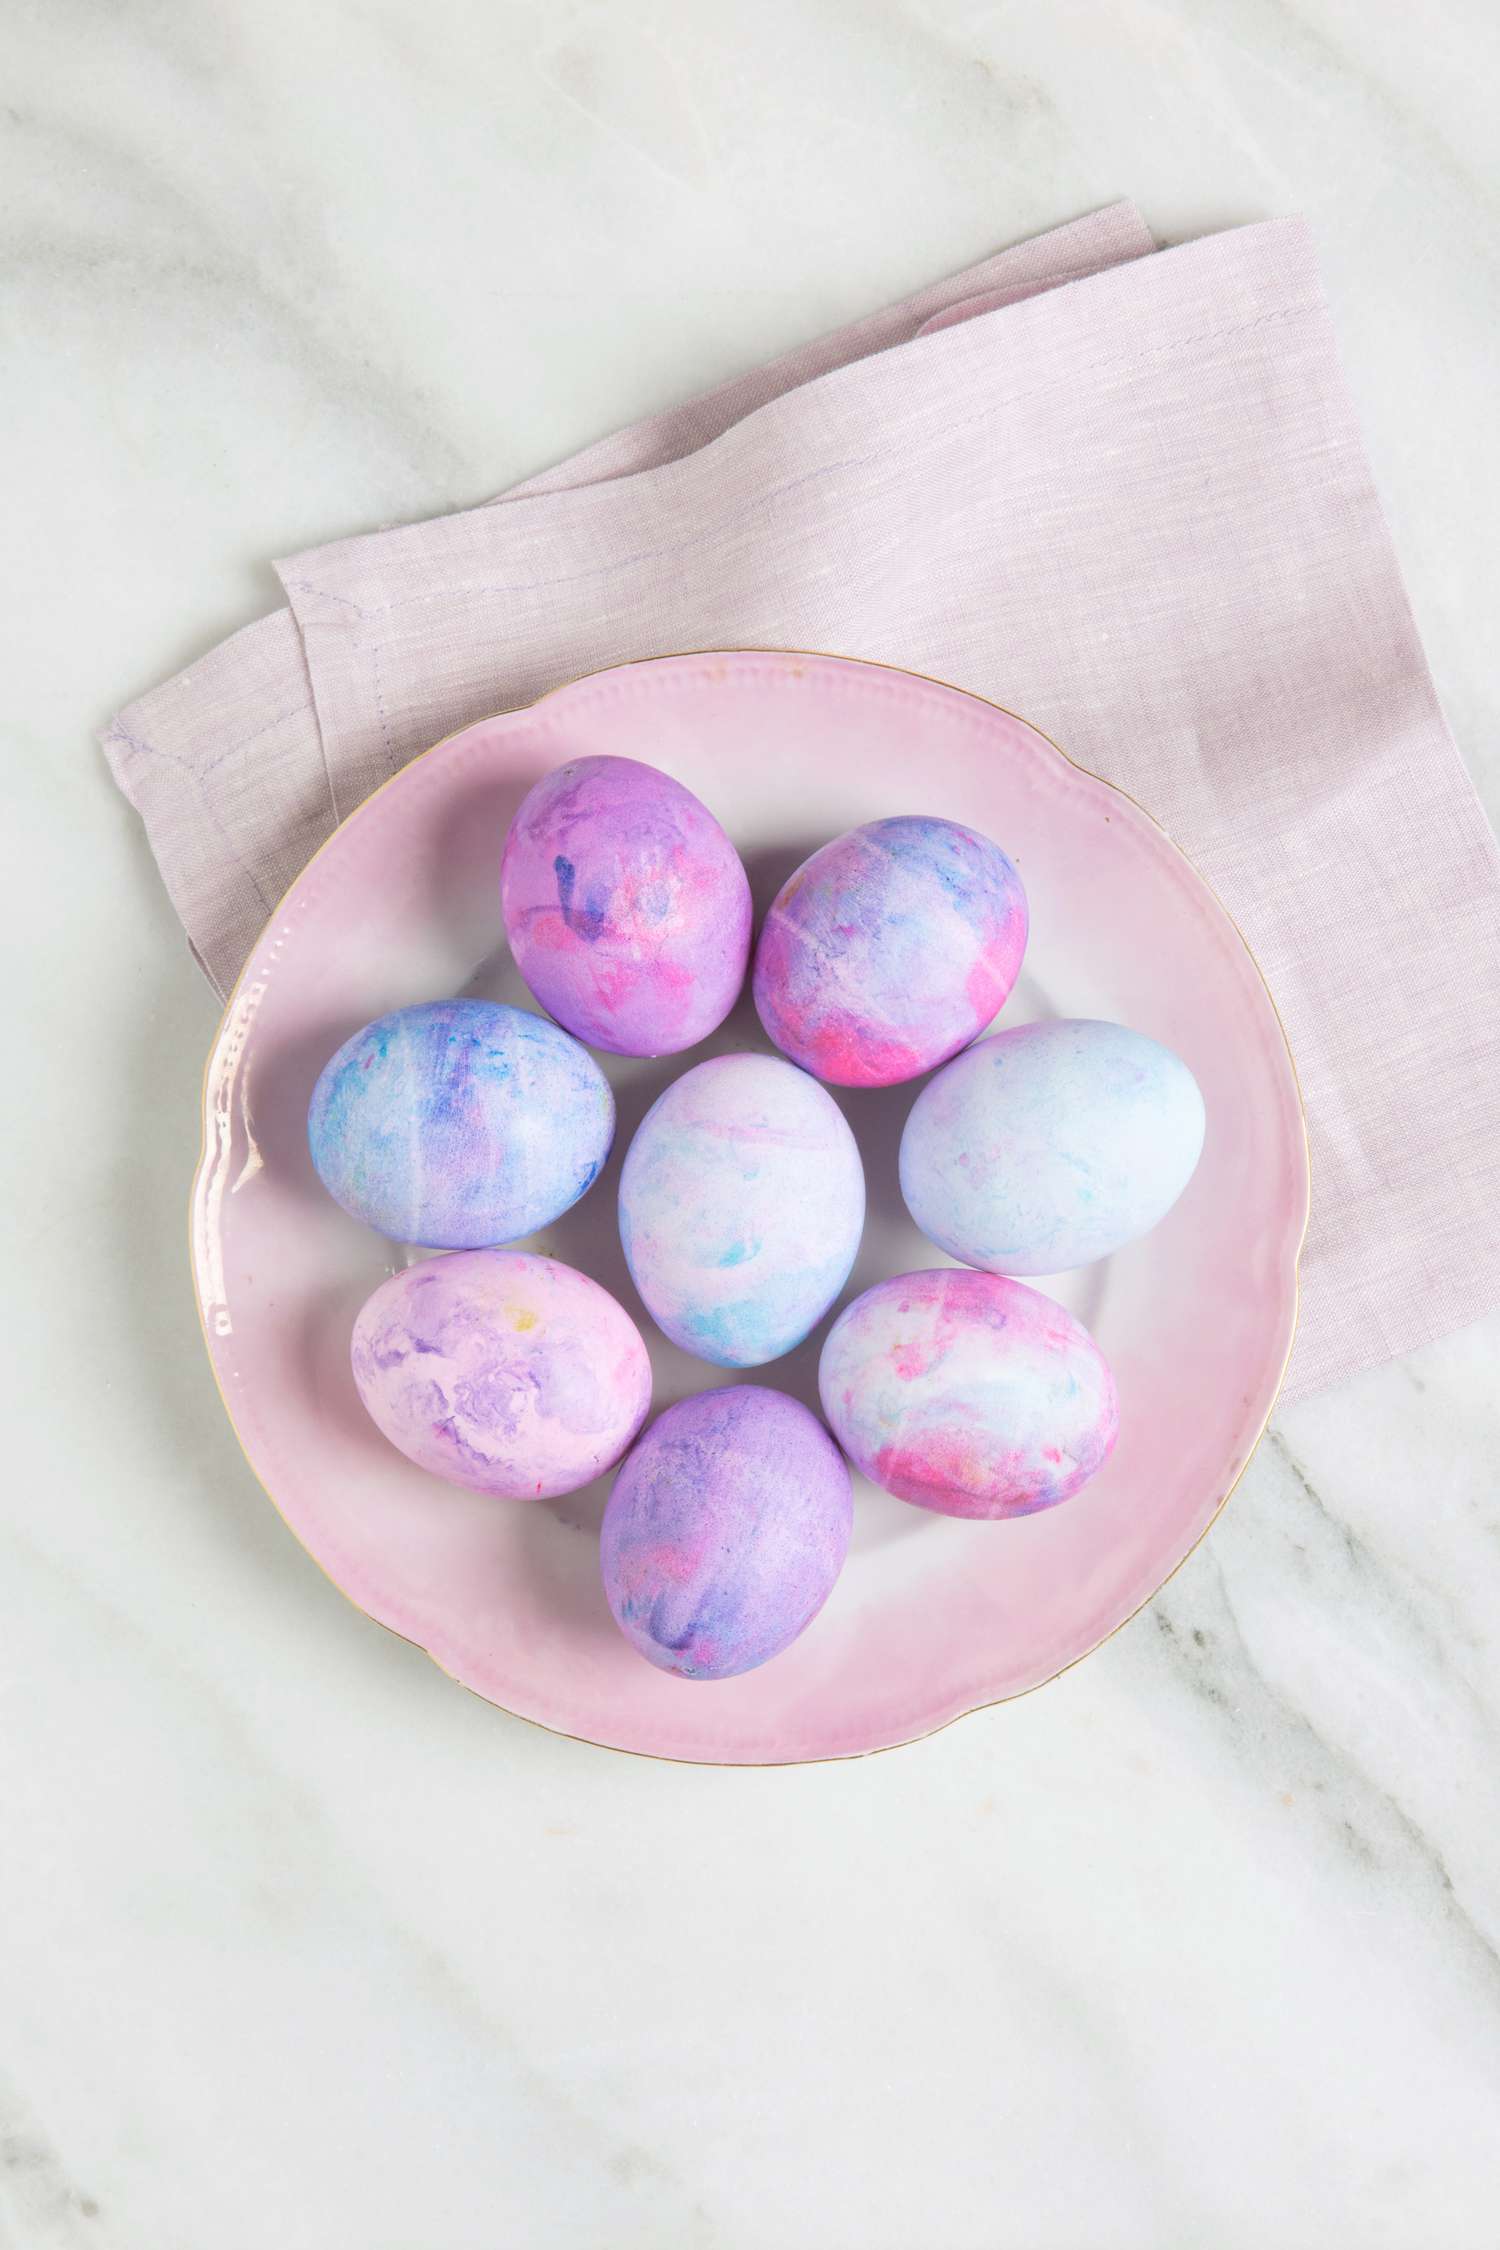 dyed easter eggs shaving cream purples